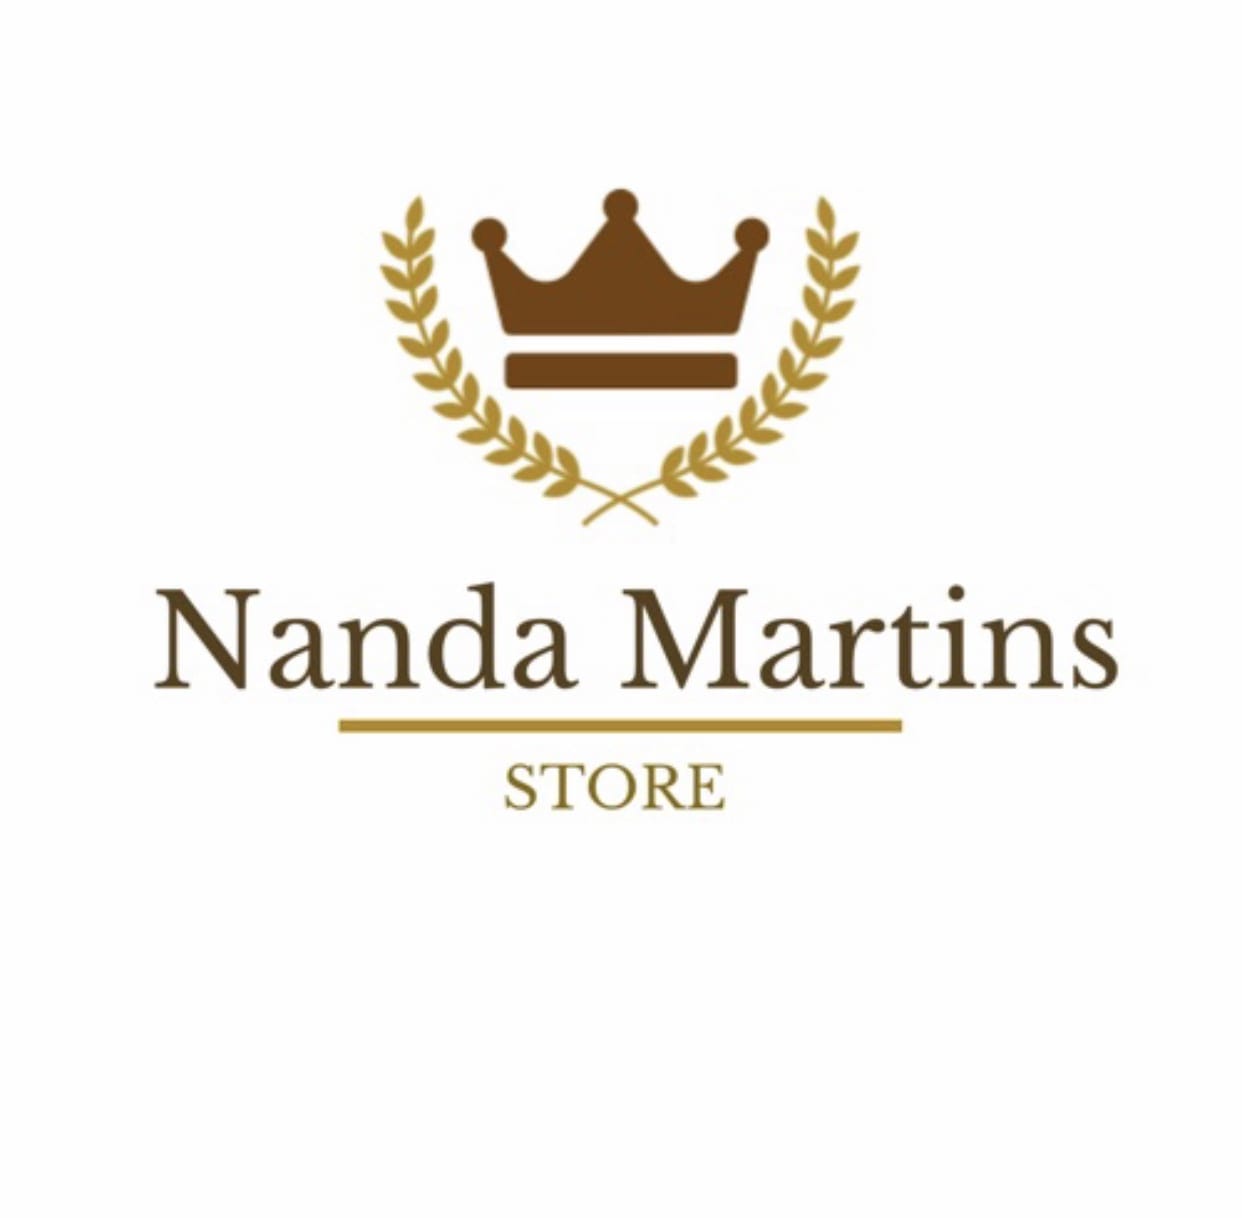 Nanda Martins Store